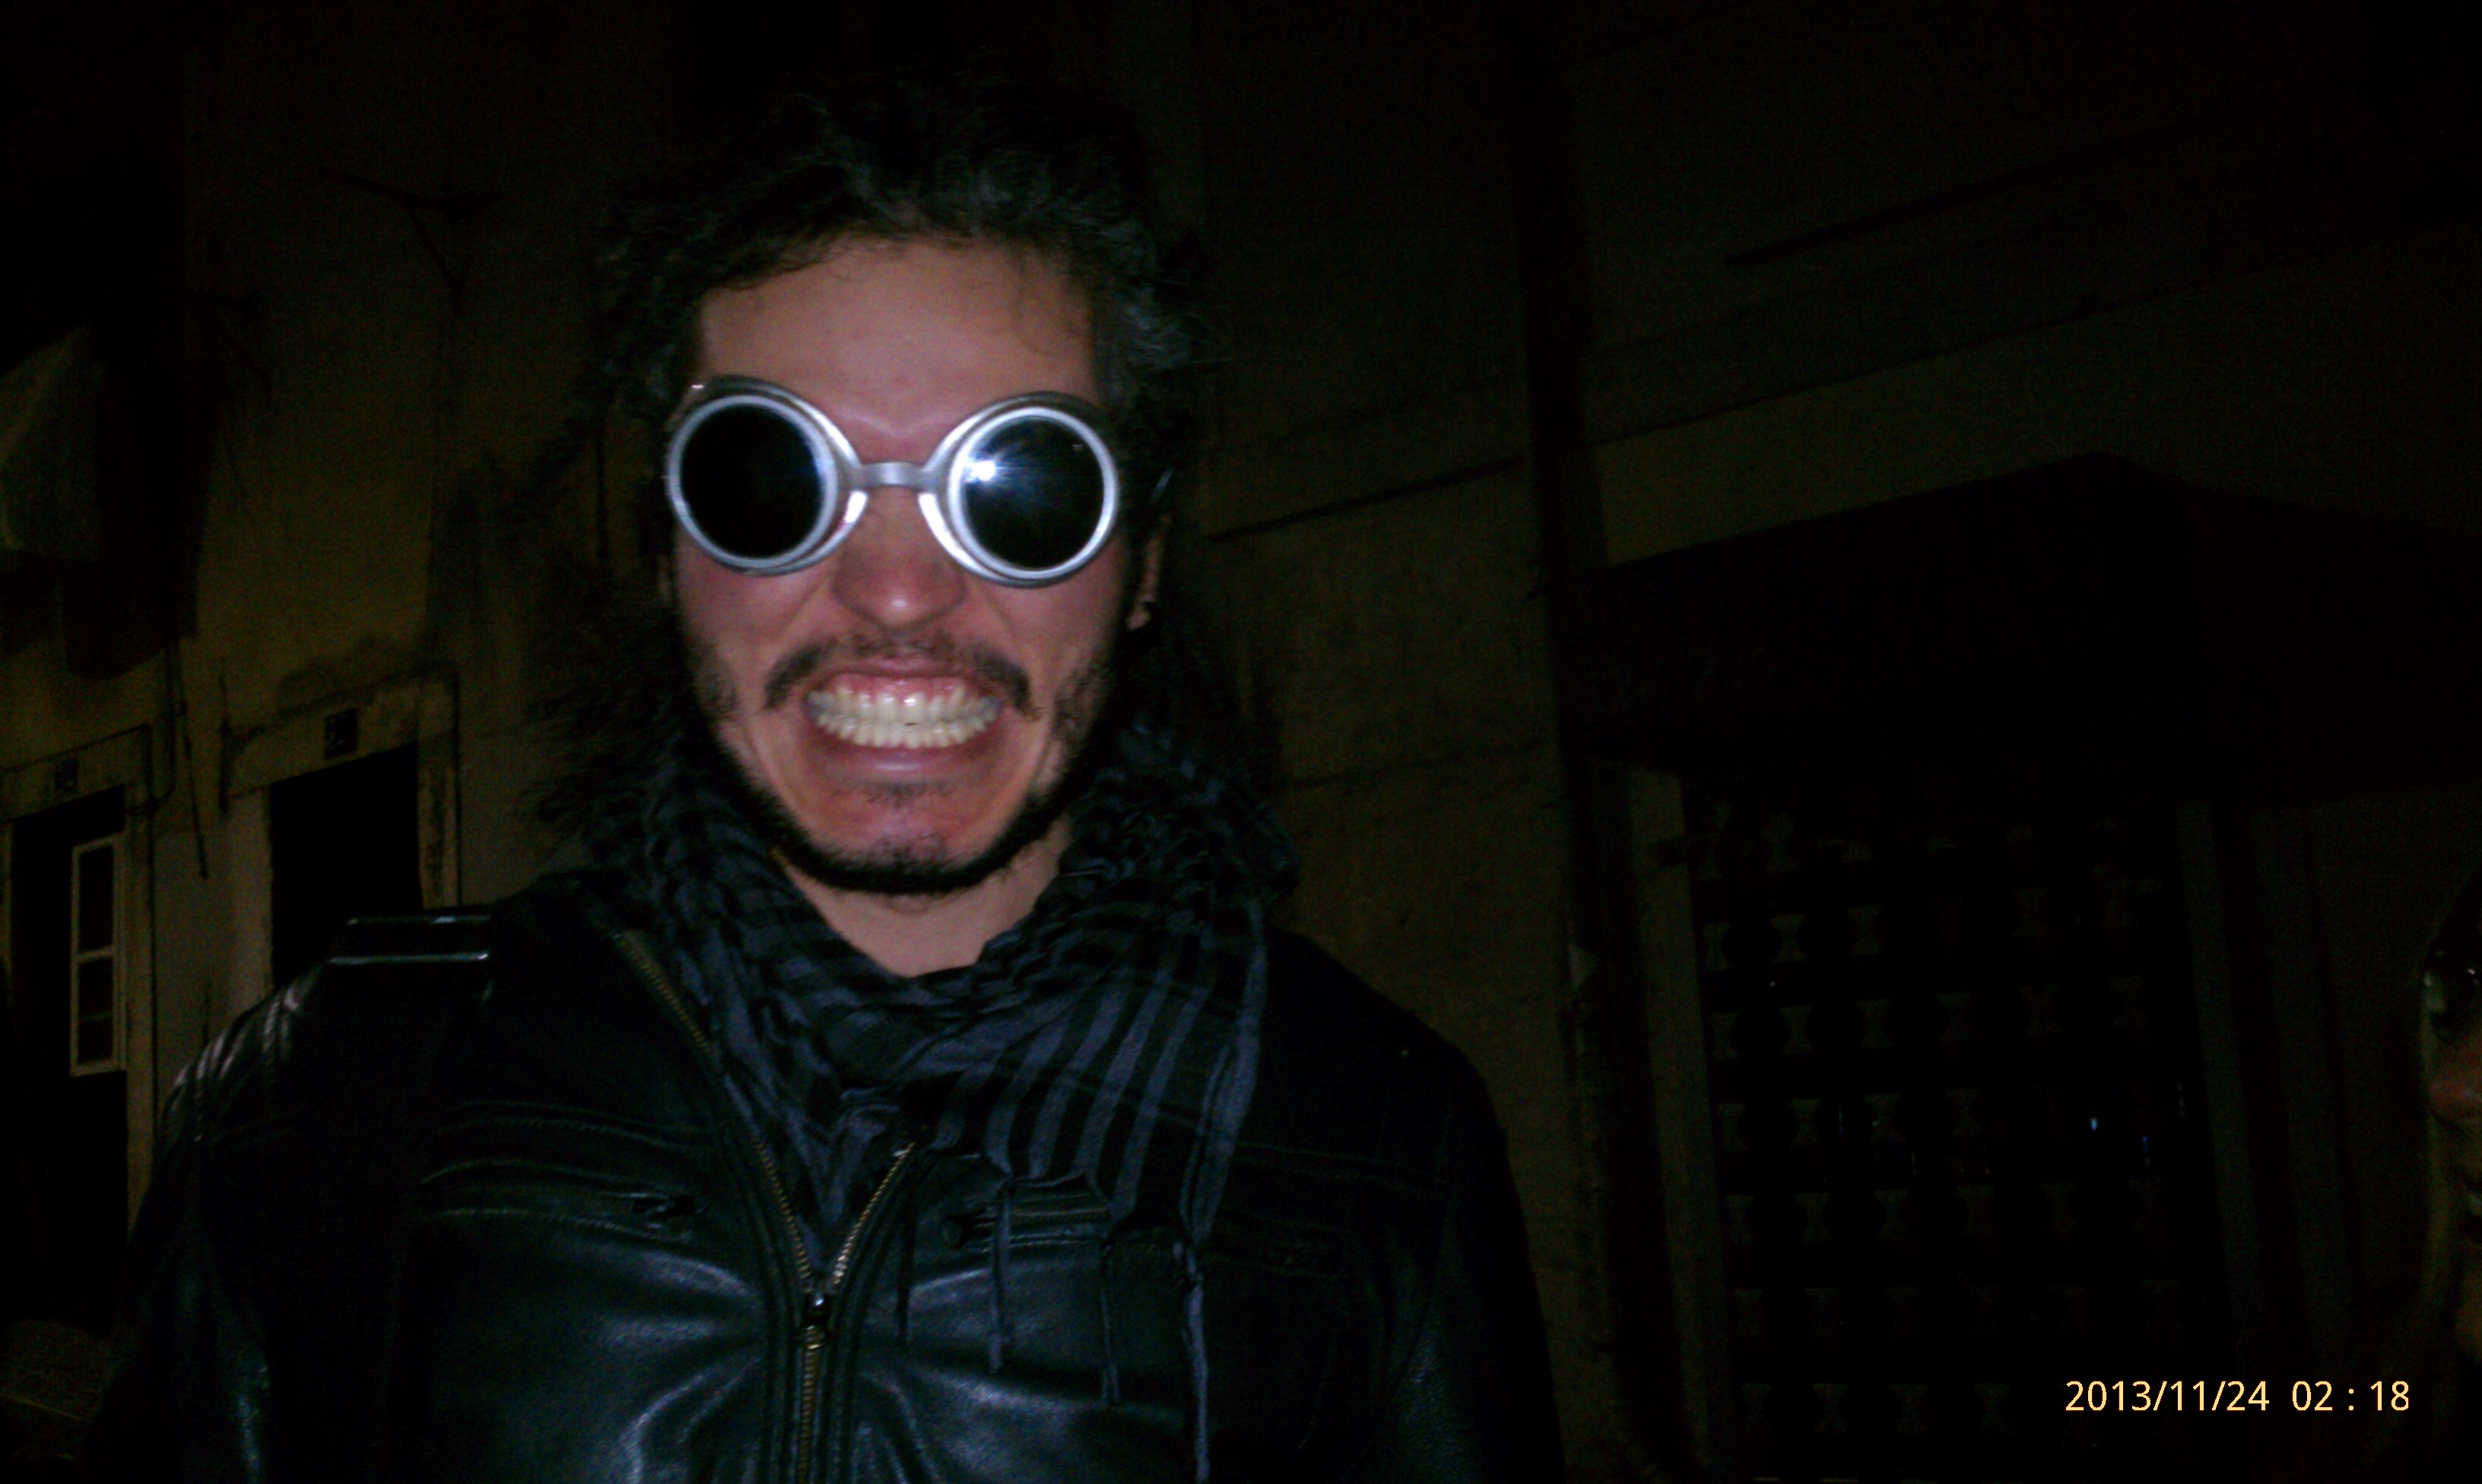 goggles, 2013/11/24